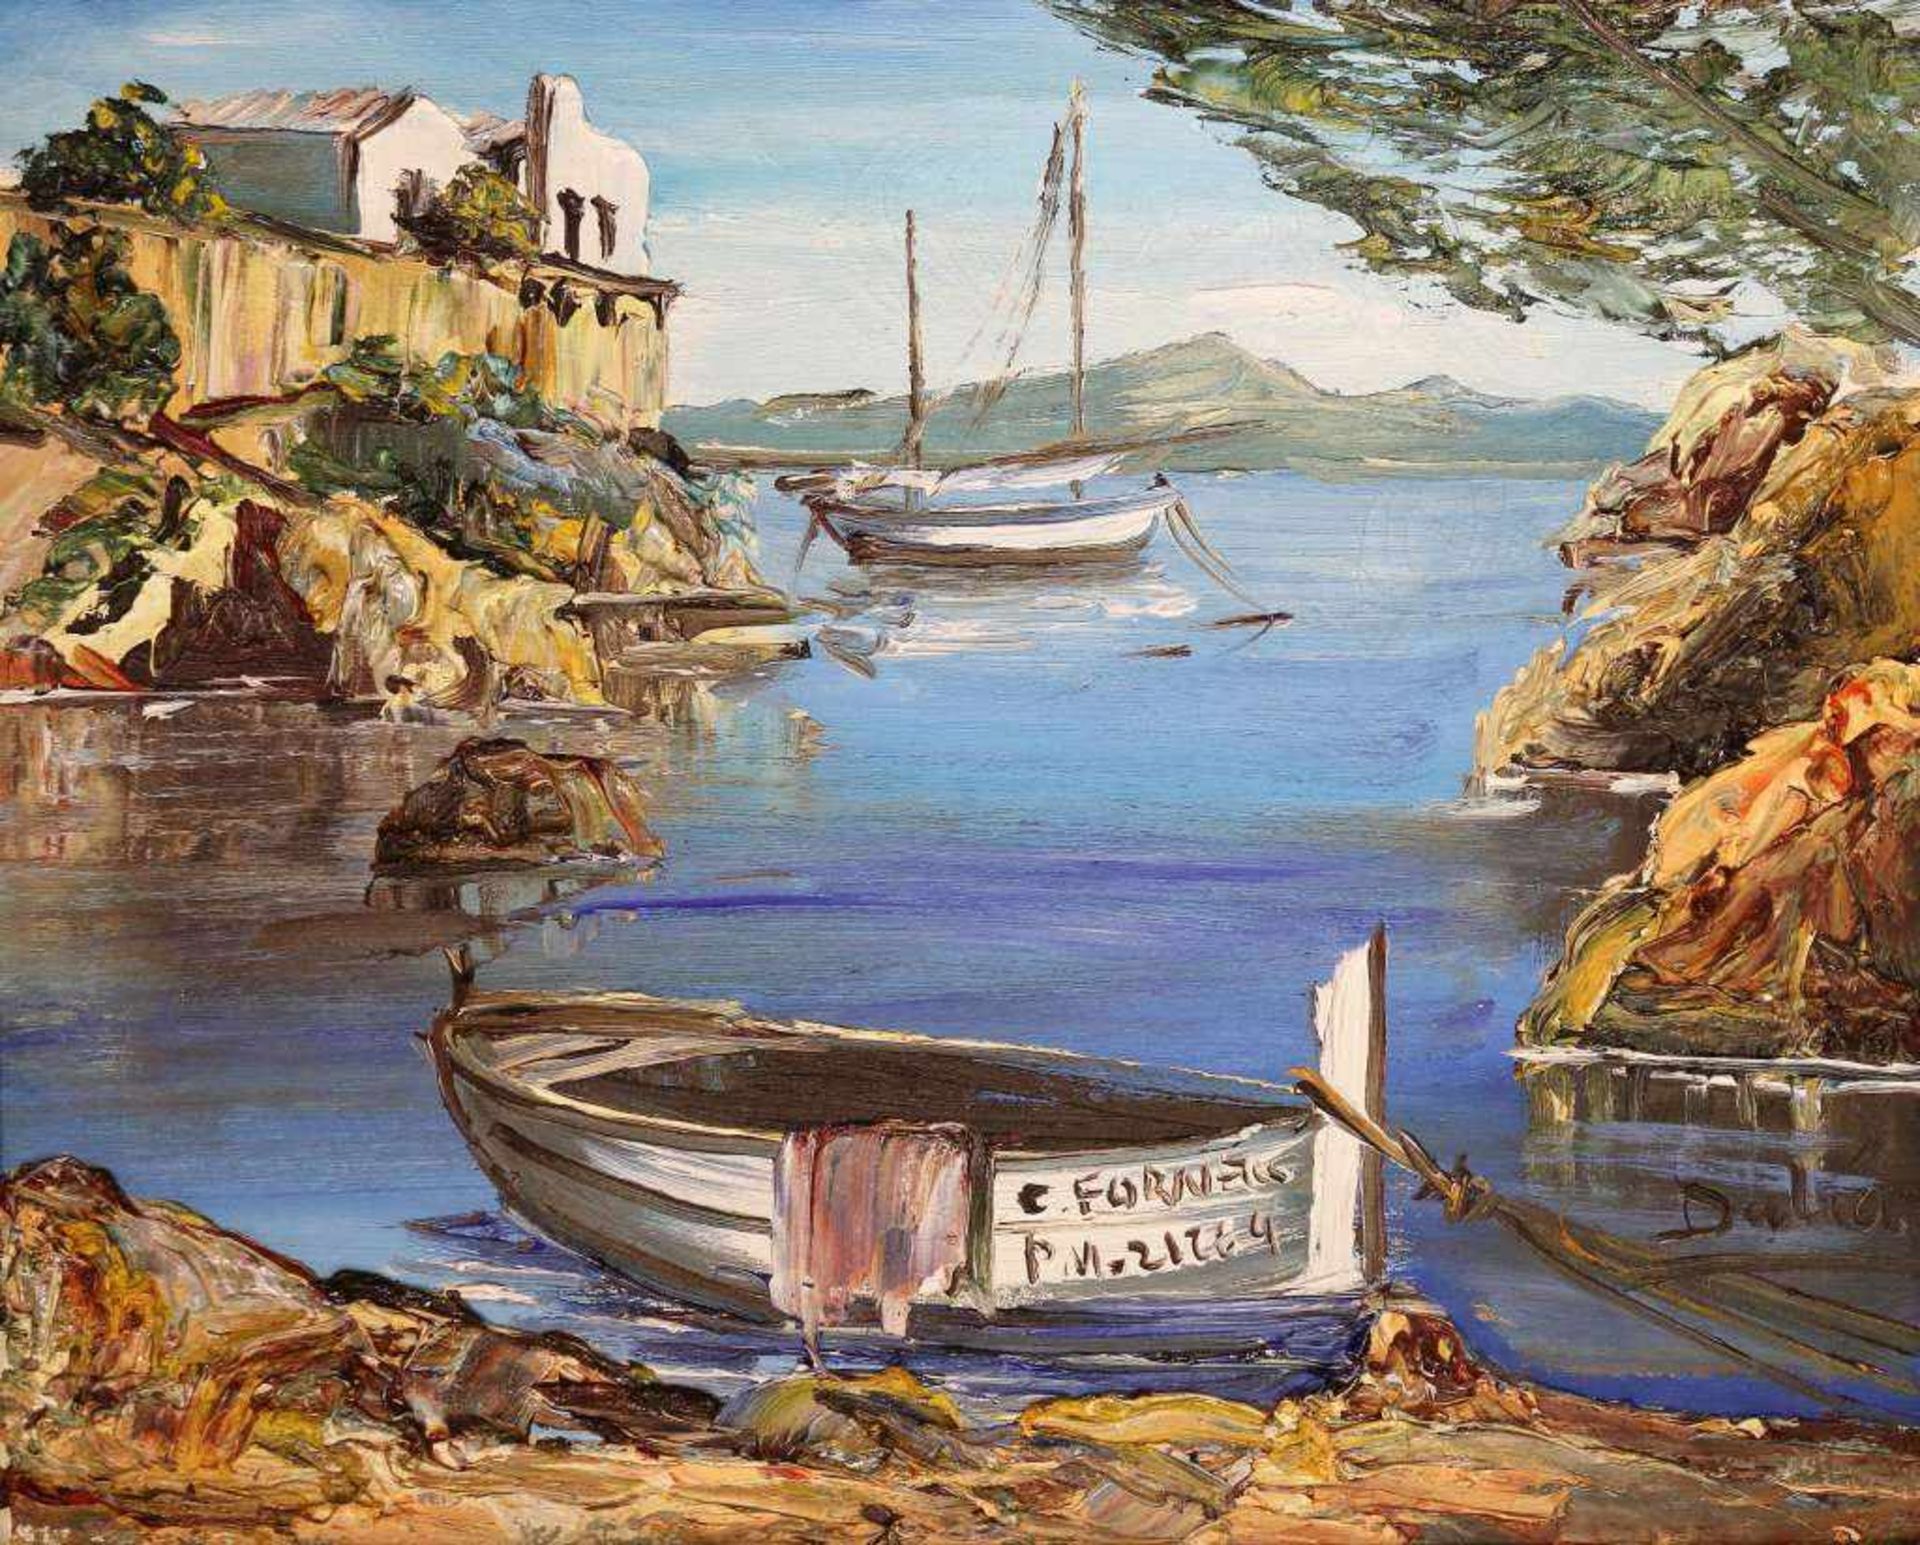 Künstler des 20. Jh., Gemälde, Inschrift auf dem Boot C. Fornells unleserlich, rechts sign. DALIA,